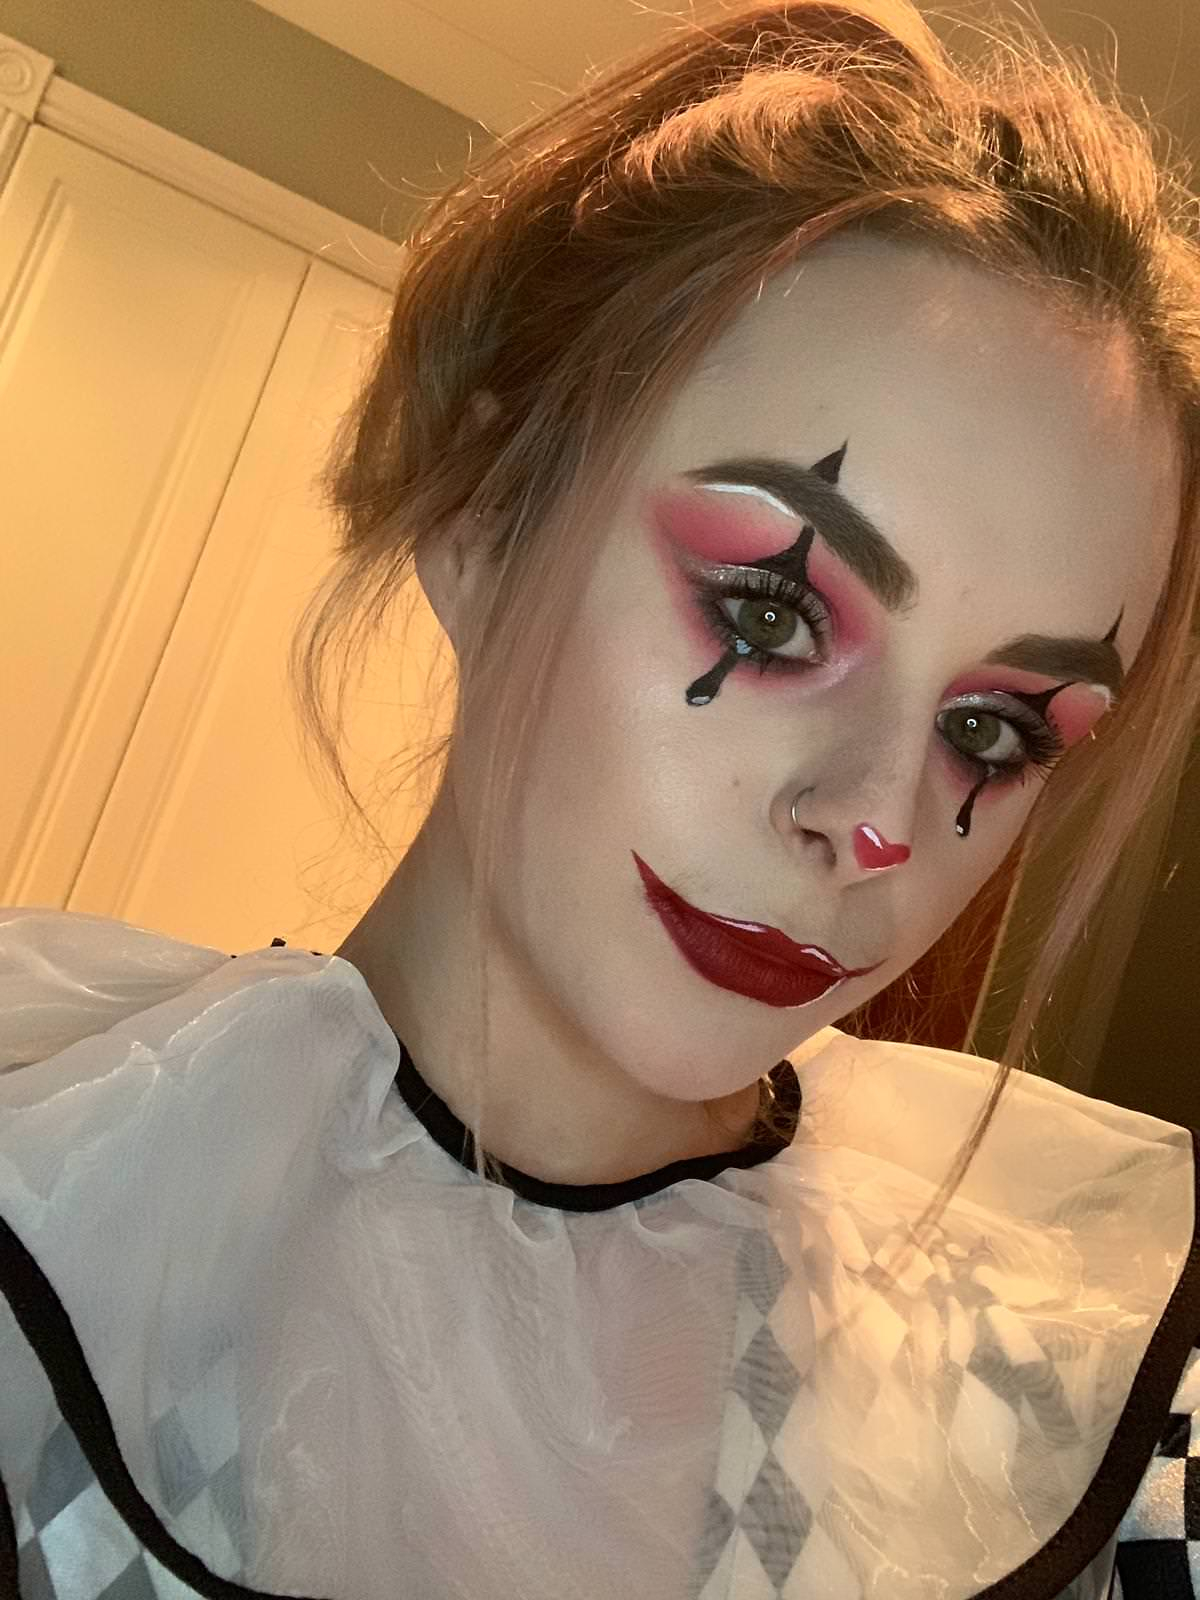  Clown  Eye Makeup  Glam  Jesterclown Halloween  Makeup  